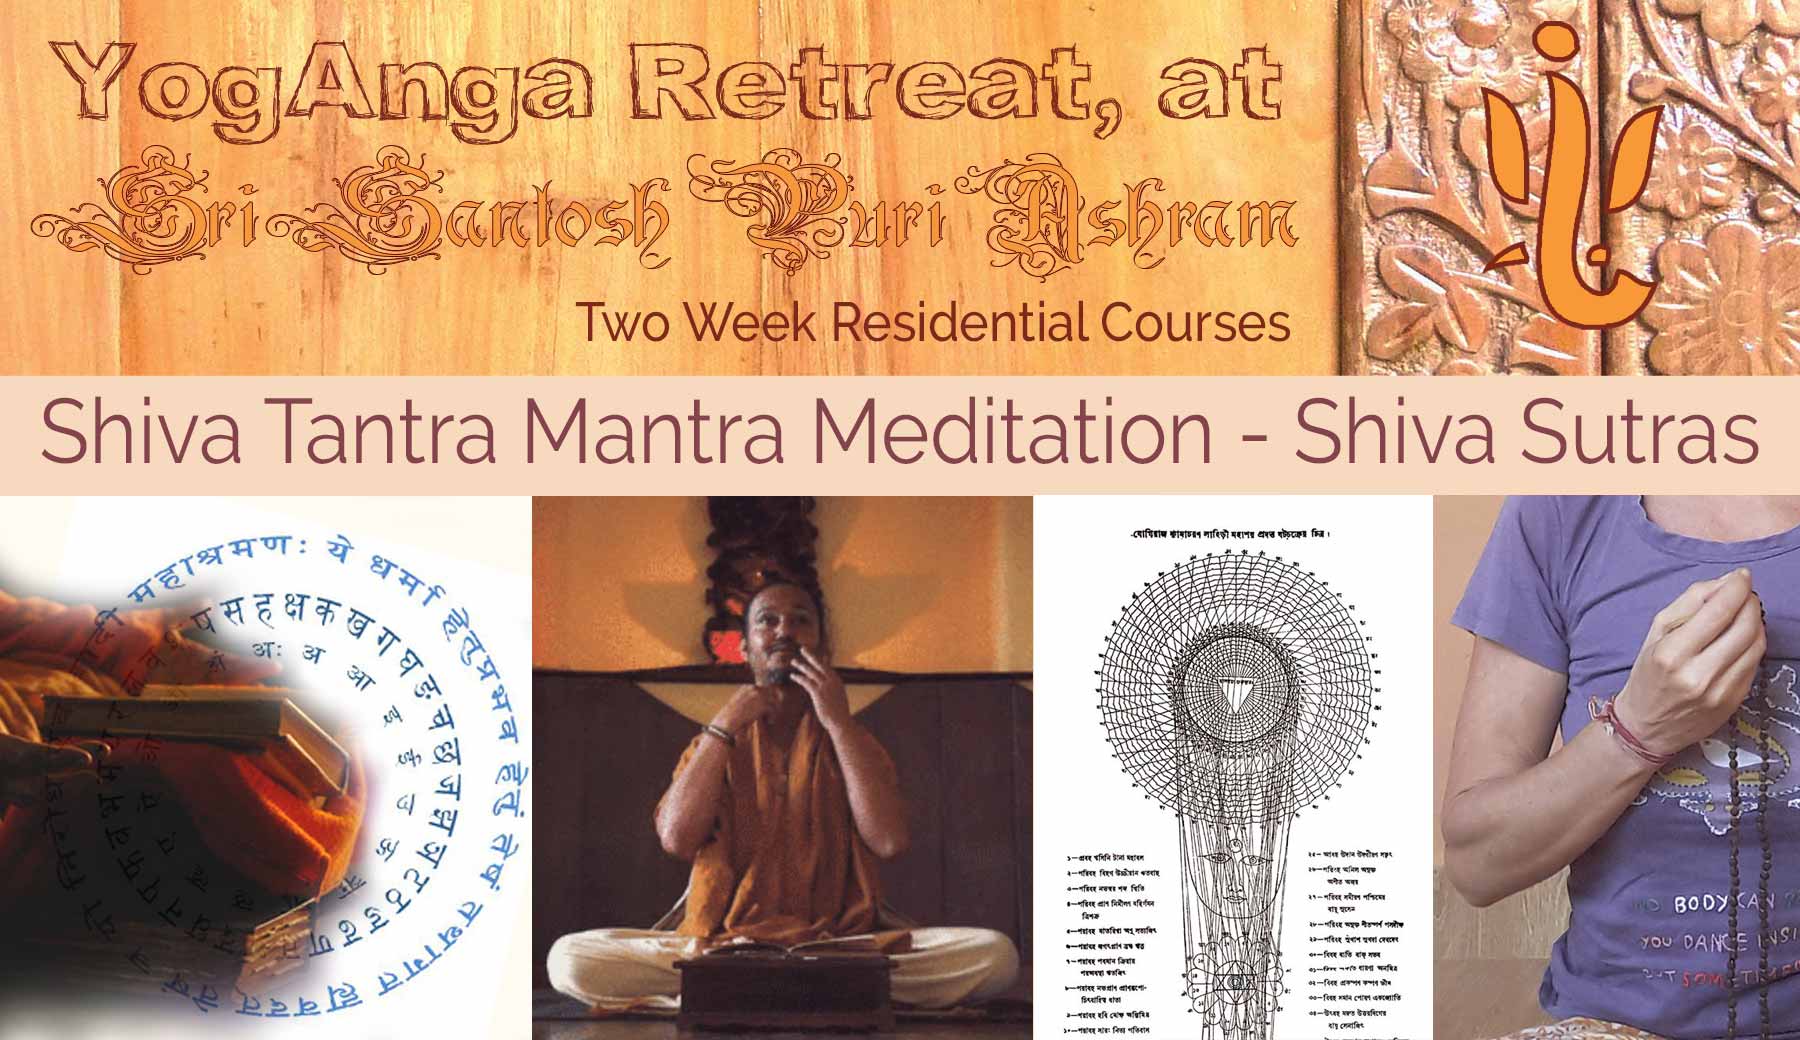 YogAnga Retreat at Sri Santosh Puri Ashram - www.yoganga.org - shiva tantra mantra meditation, śiva śakti and nara, chakra wheel of letters, sanskrit, shiva sutras